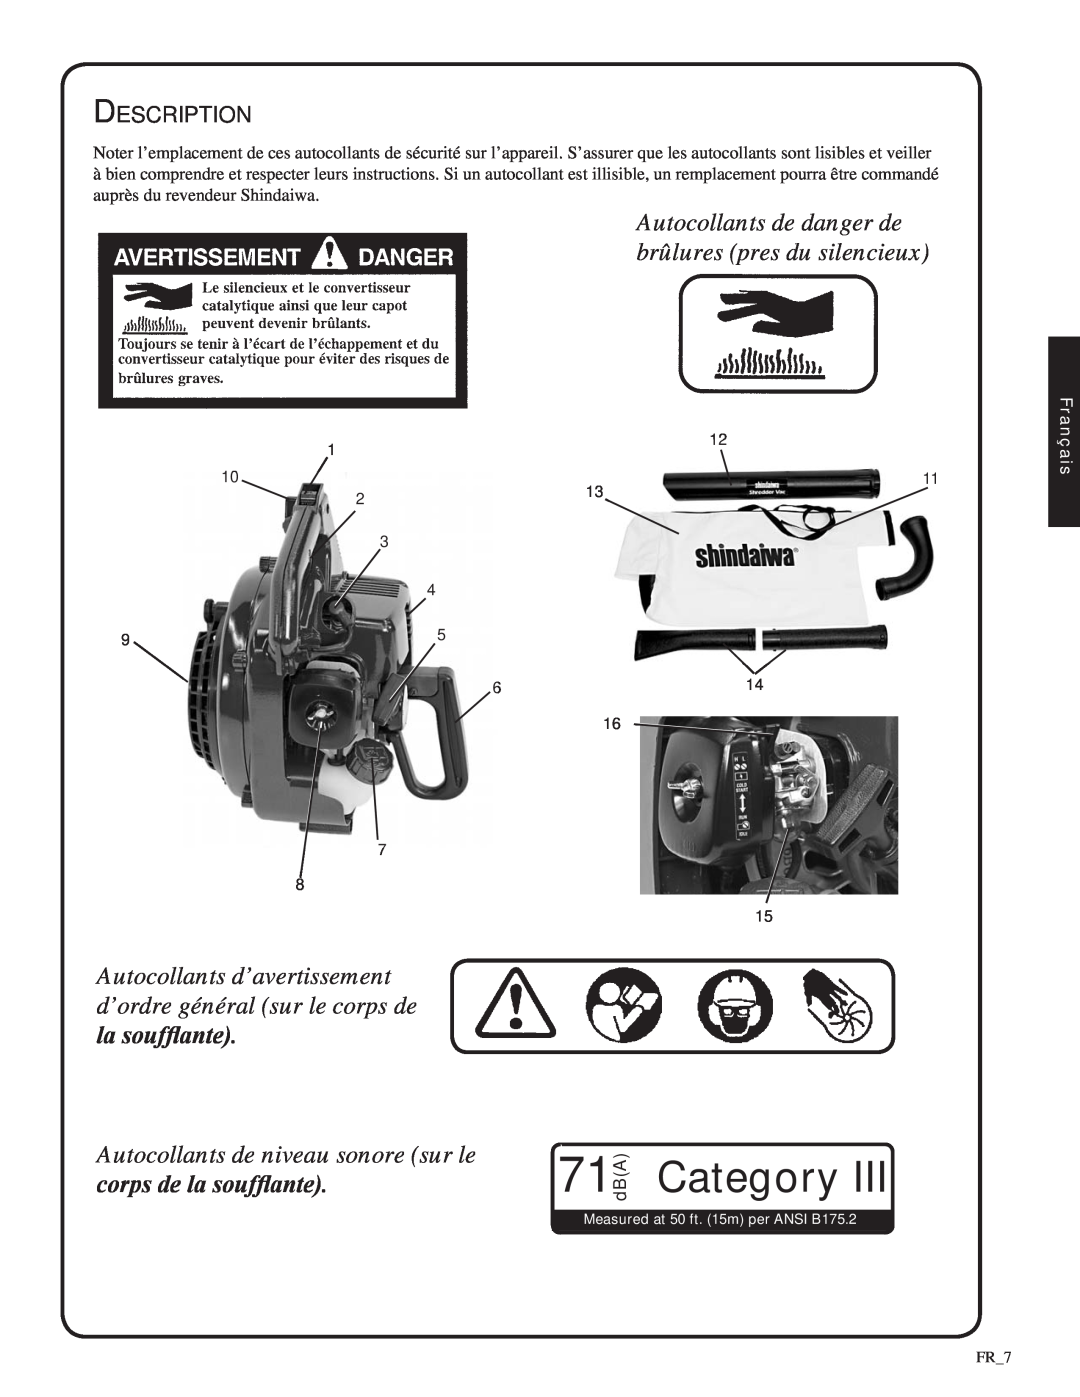 Shindaiwa 82052 manual Autocollants de niveau sonore sur le, corps de la soufflante, Category, Description, 71dBA, Français 